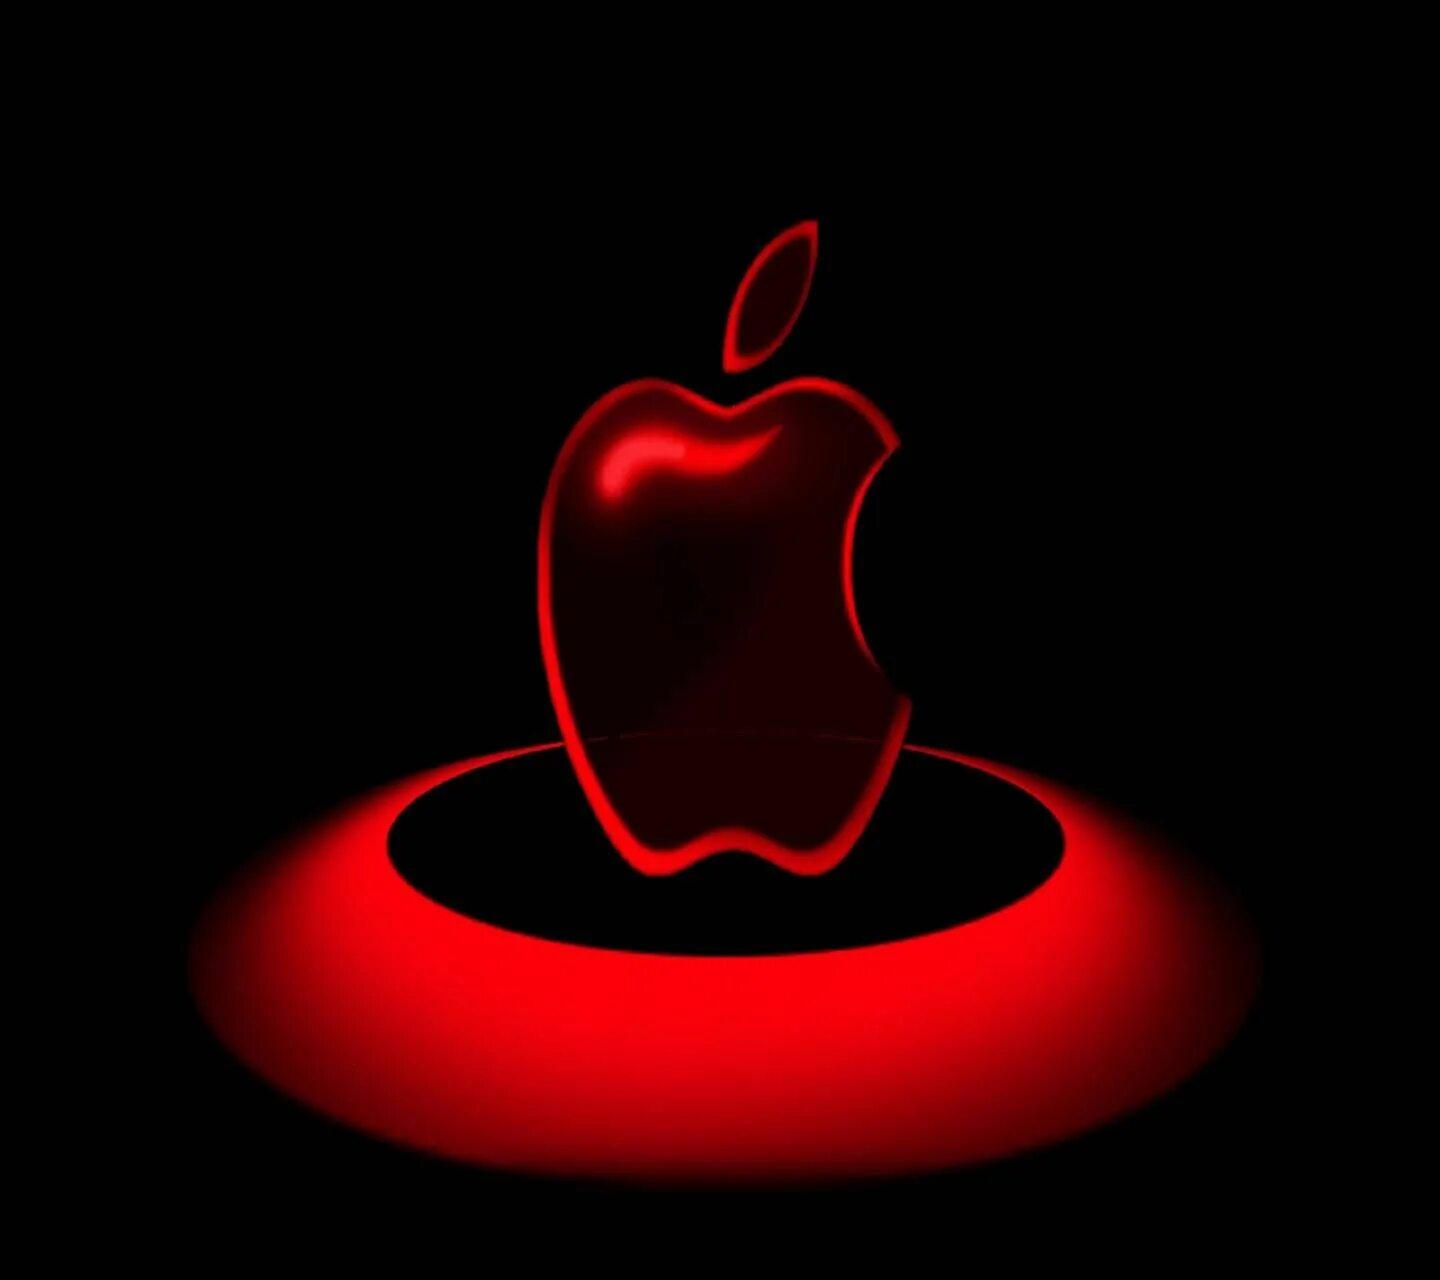 Логотип Apple. Красное яблоко на черном фоне. Яблоко на темном фоне. Картинки эпл.